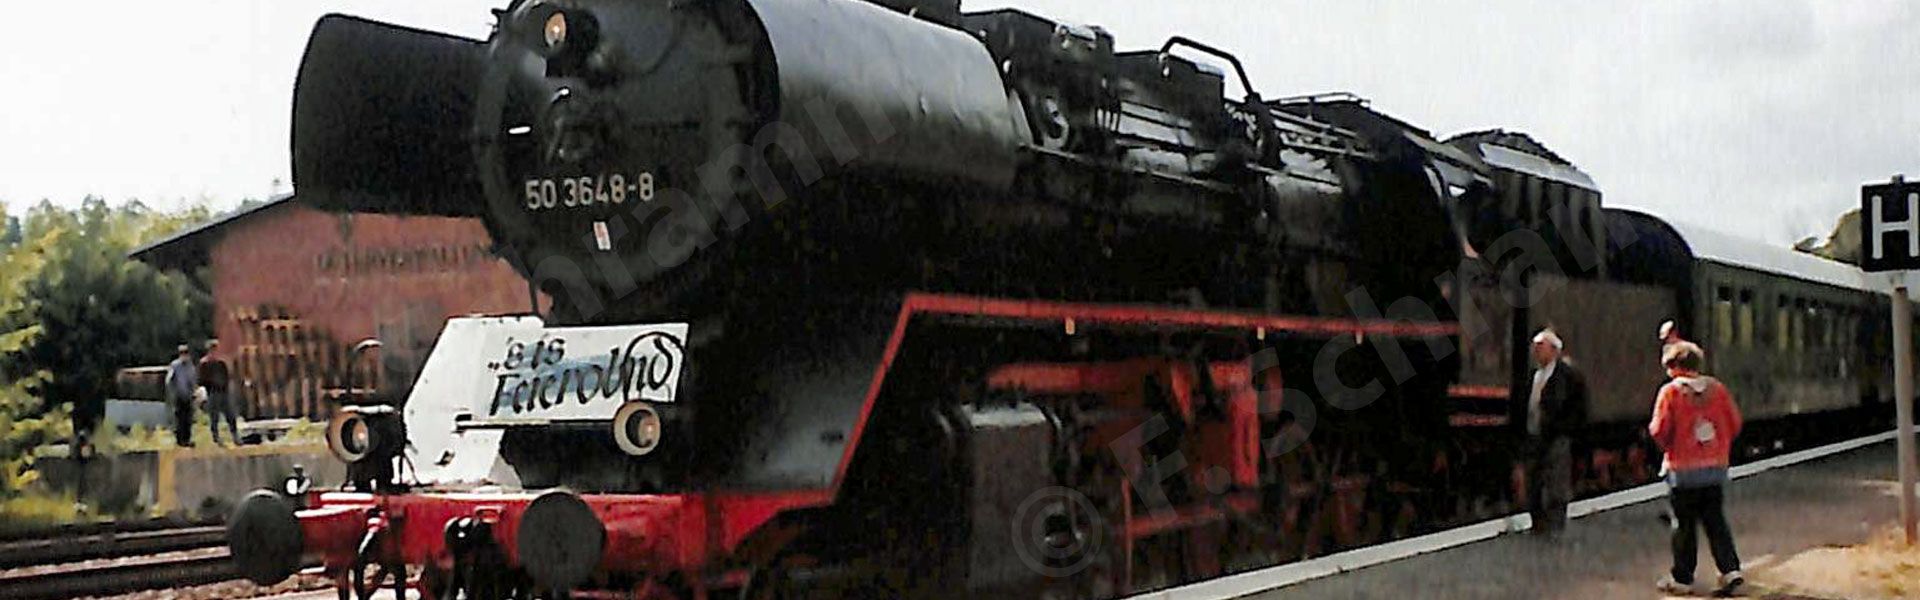 "S is Feierobnd" - Dampfsonderzug am 24.05.1998 am Bahnhof Markersdorf-Taura